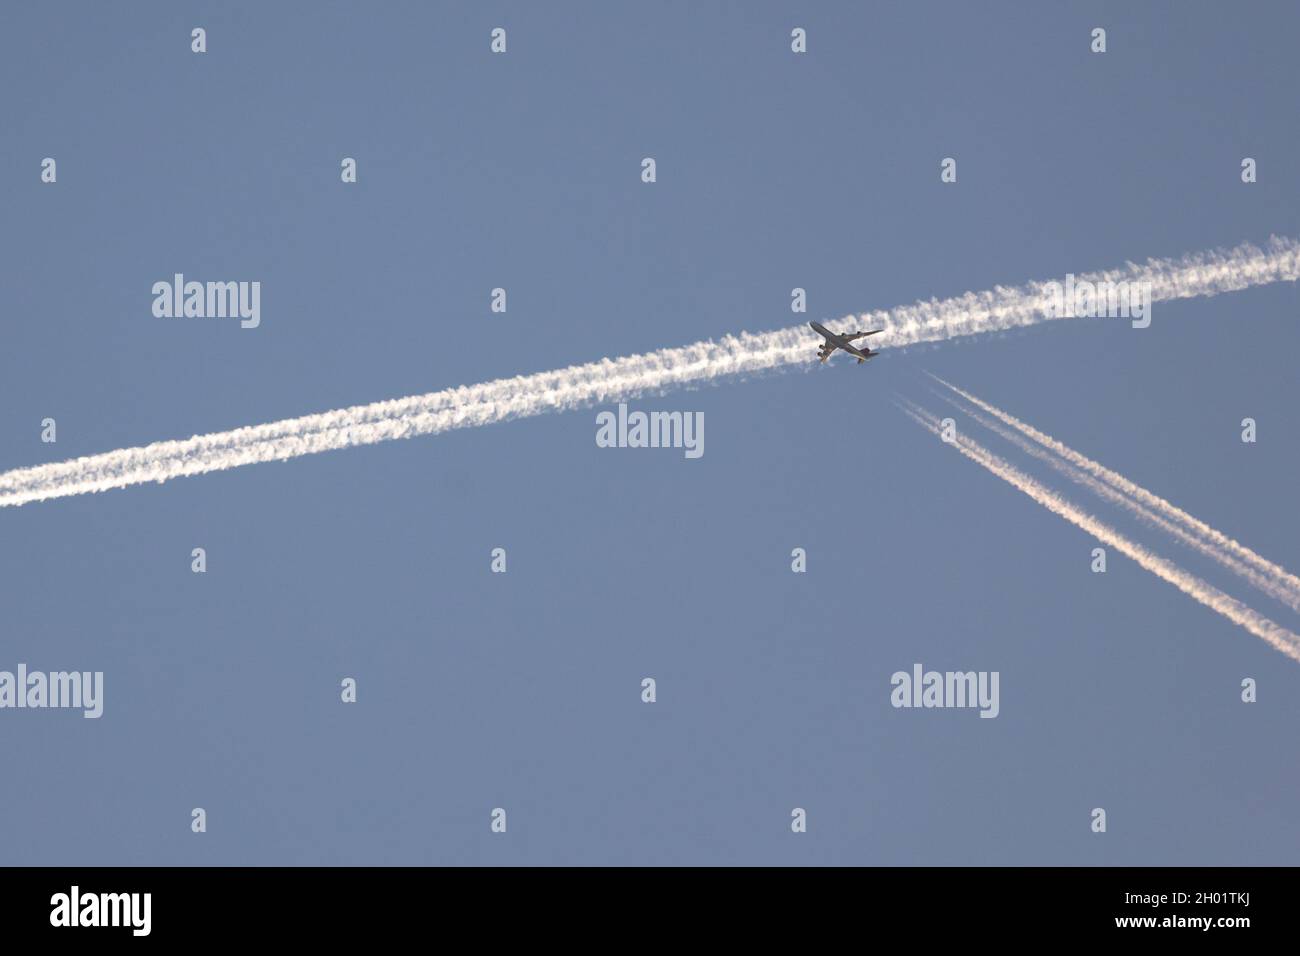 Verkehr am Himmel. Ein Flugzeug überquert den Kondensstreifen, den ein anderes Flugzeug einige Sekunden zuvor am Himmel markiert hat. Am Frühen Morgen Stockfoto